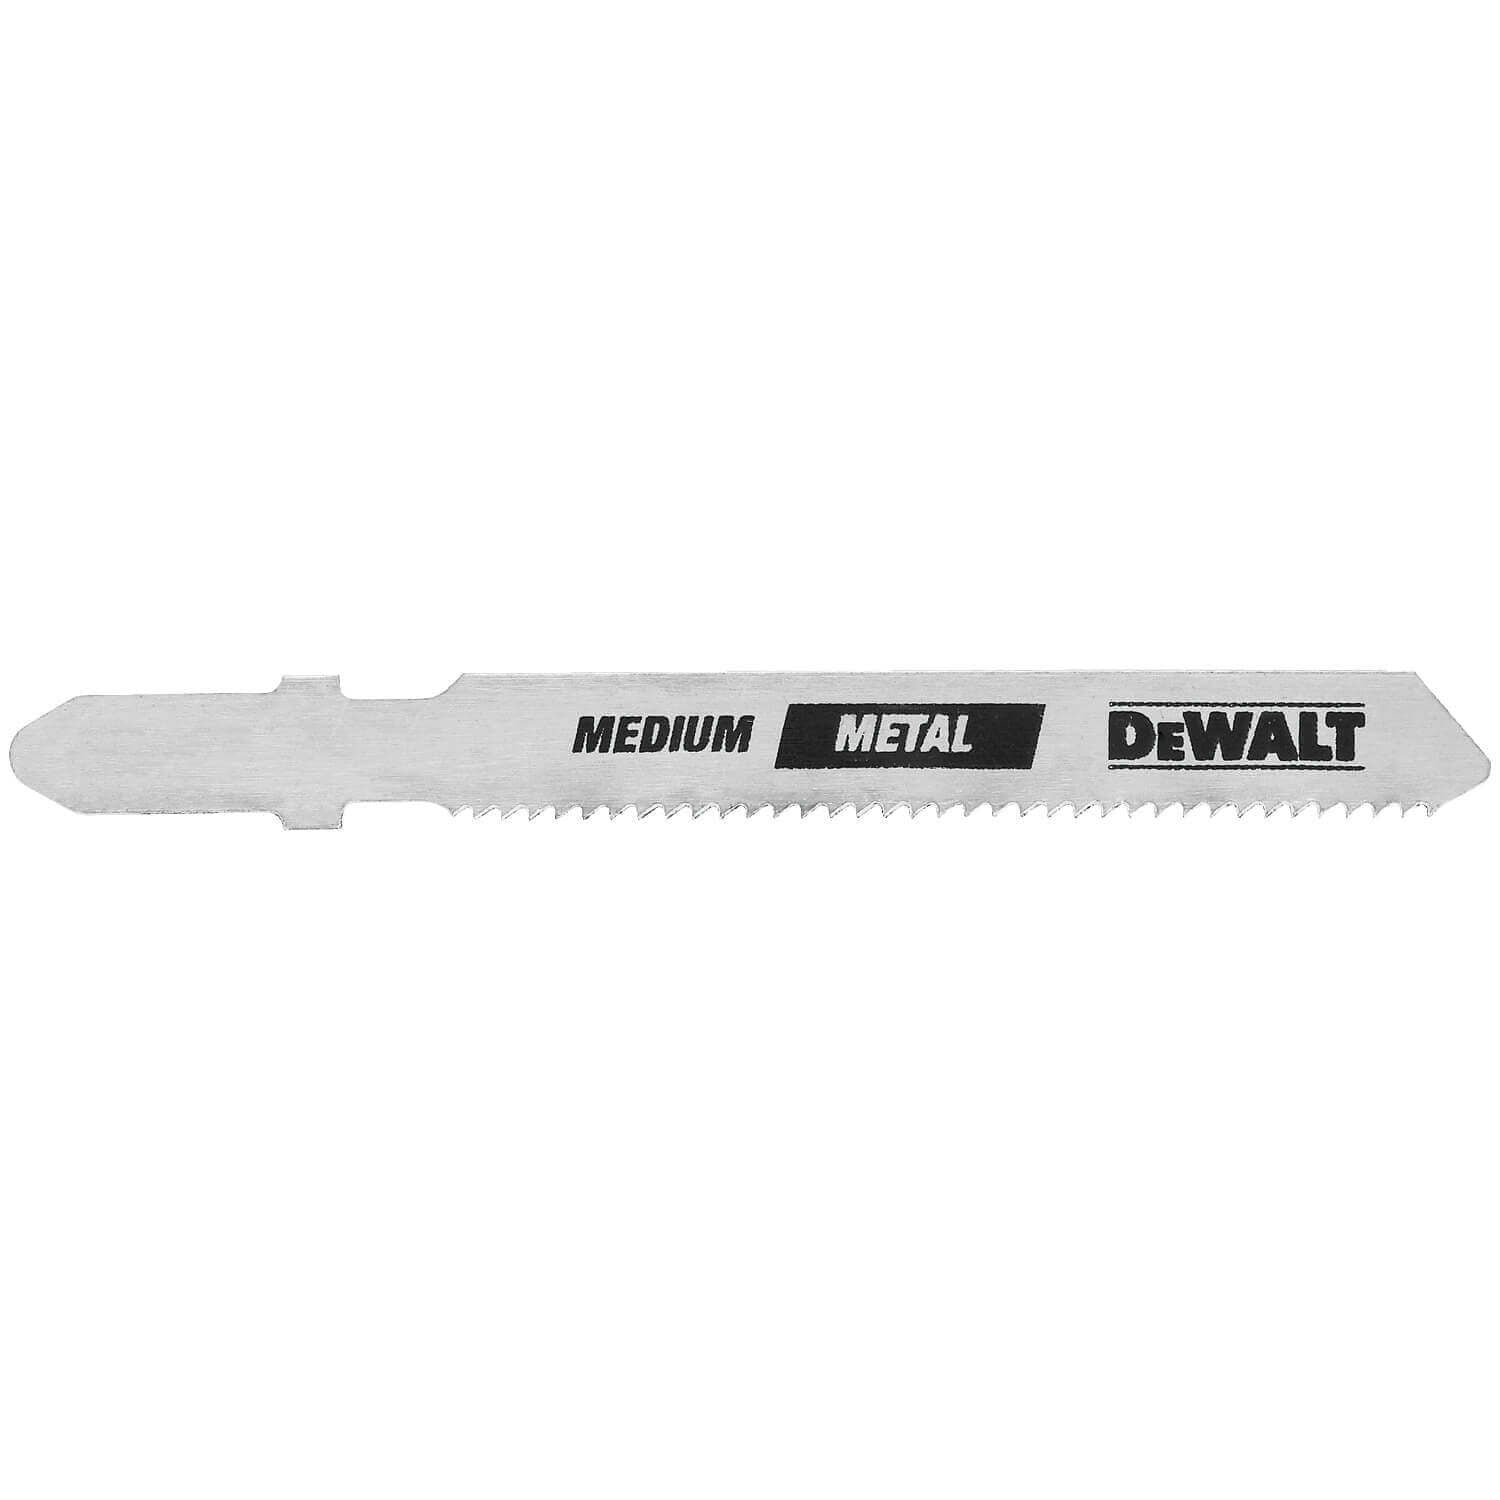 DW3778-5  3" 36 TPI Metal Cutting T- Shank Jig Saw Blades